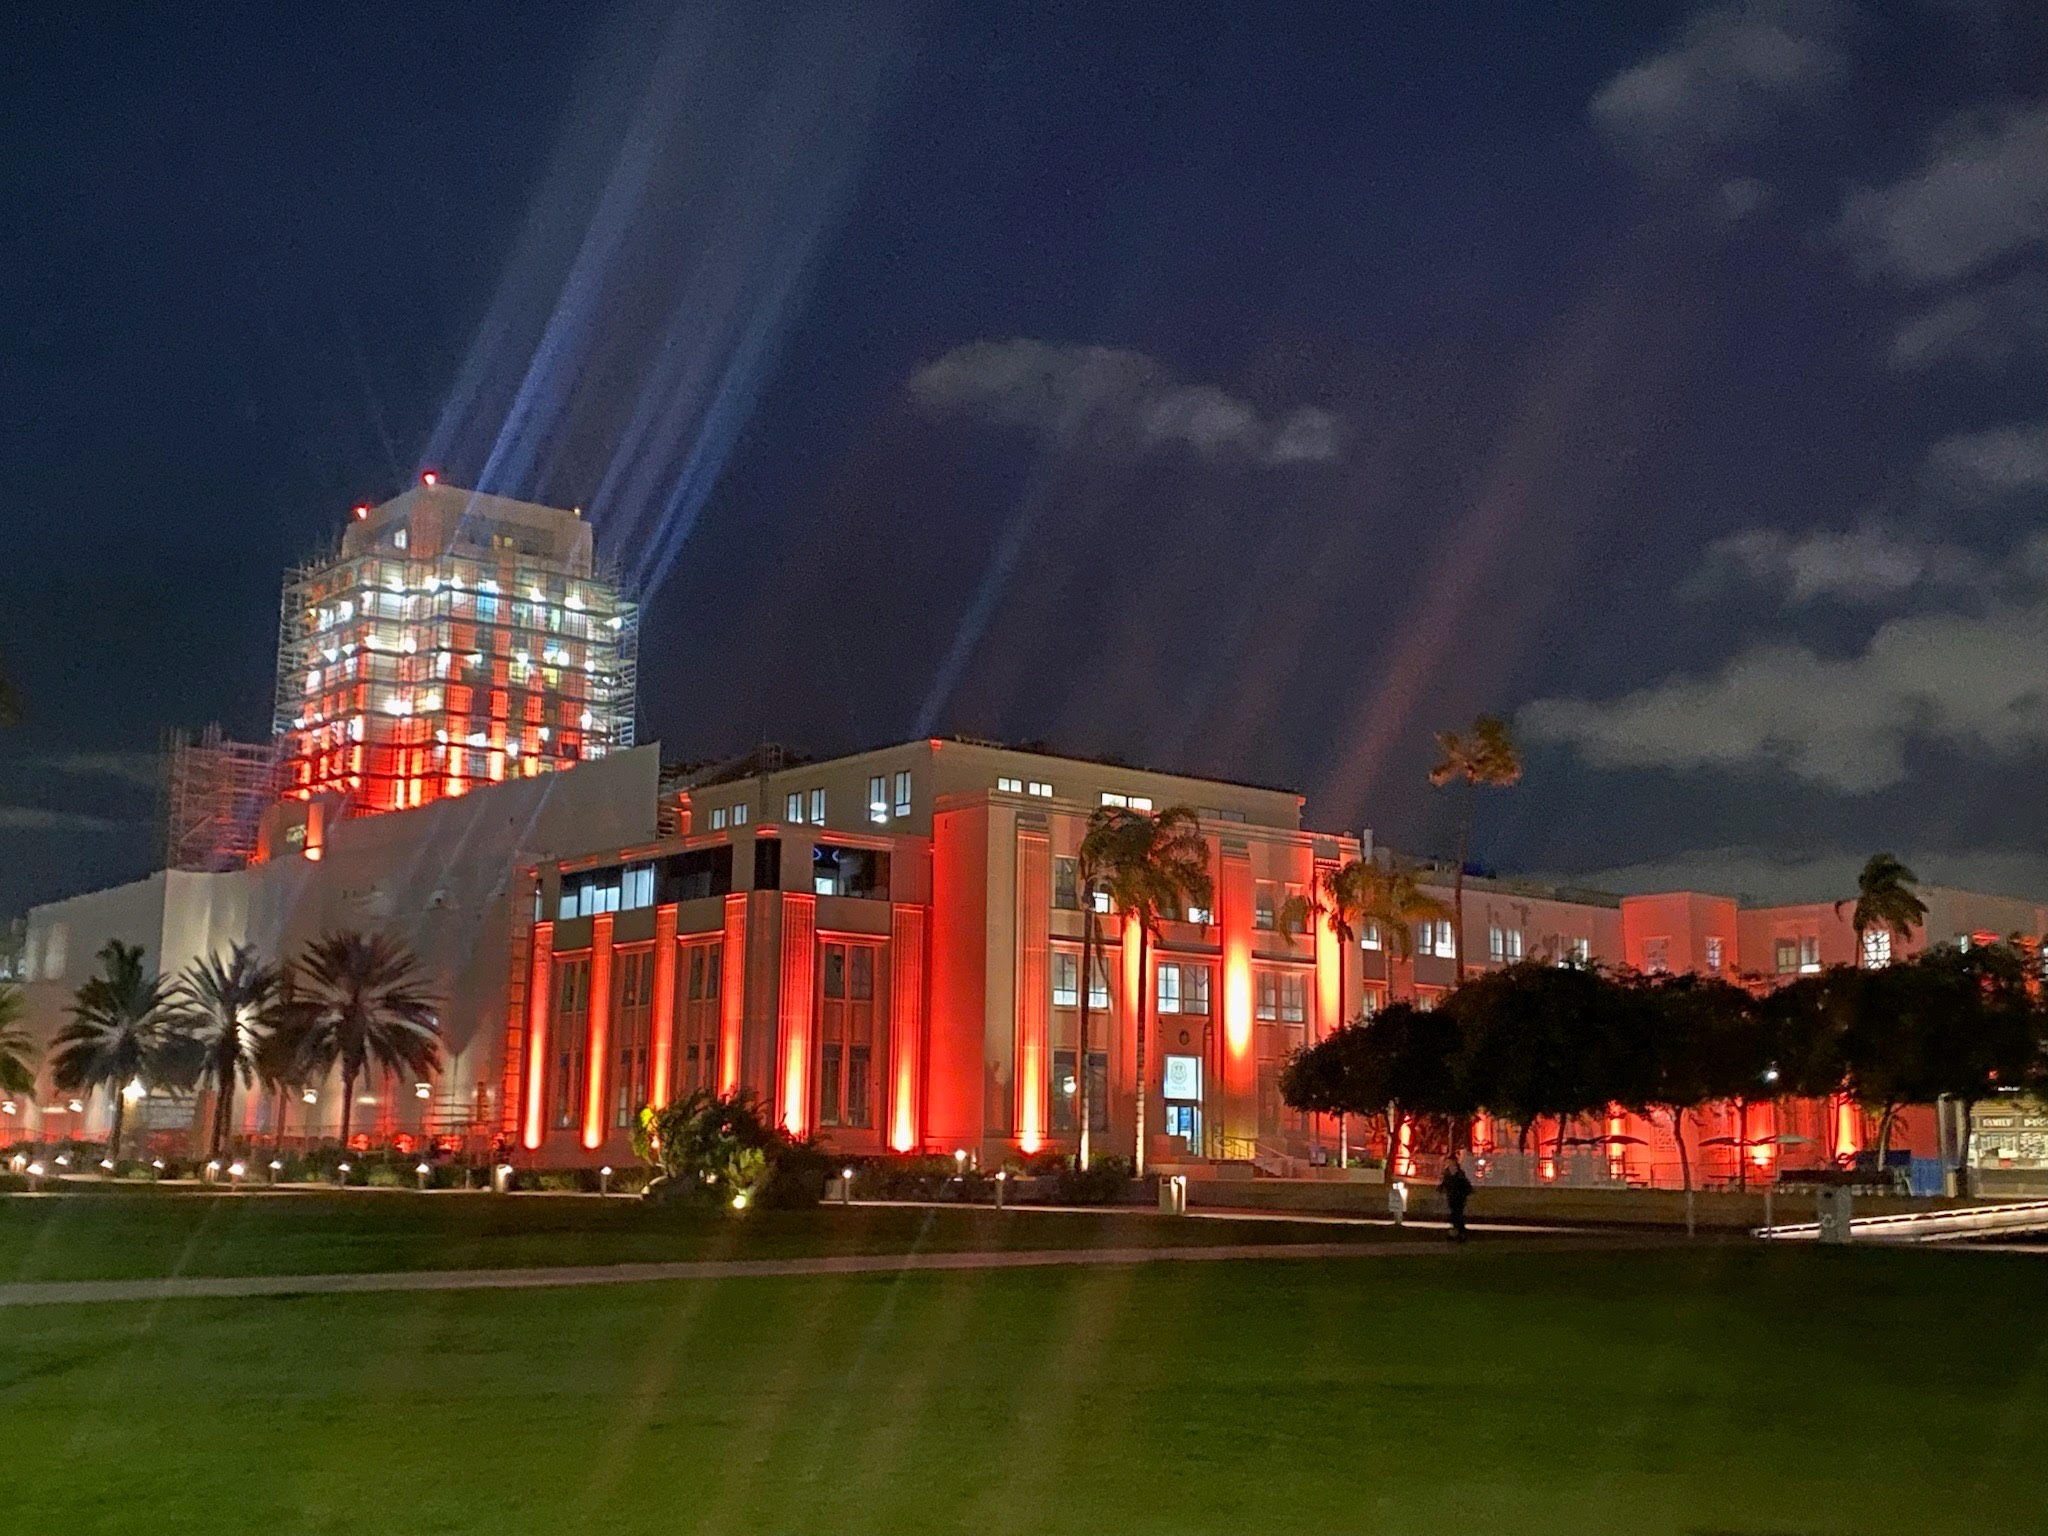 El edificio de la administración del condado de San Diego, un gran edificio rectangular, se muestra bajo un cielo nocturno parcialmente nublado y está iluminado con luces naranjas de neón brillantes en la fachada del edificio.